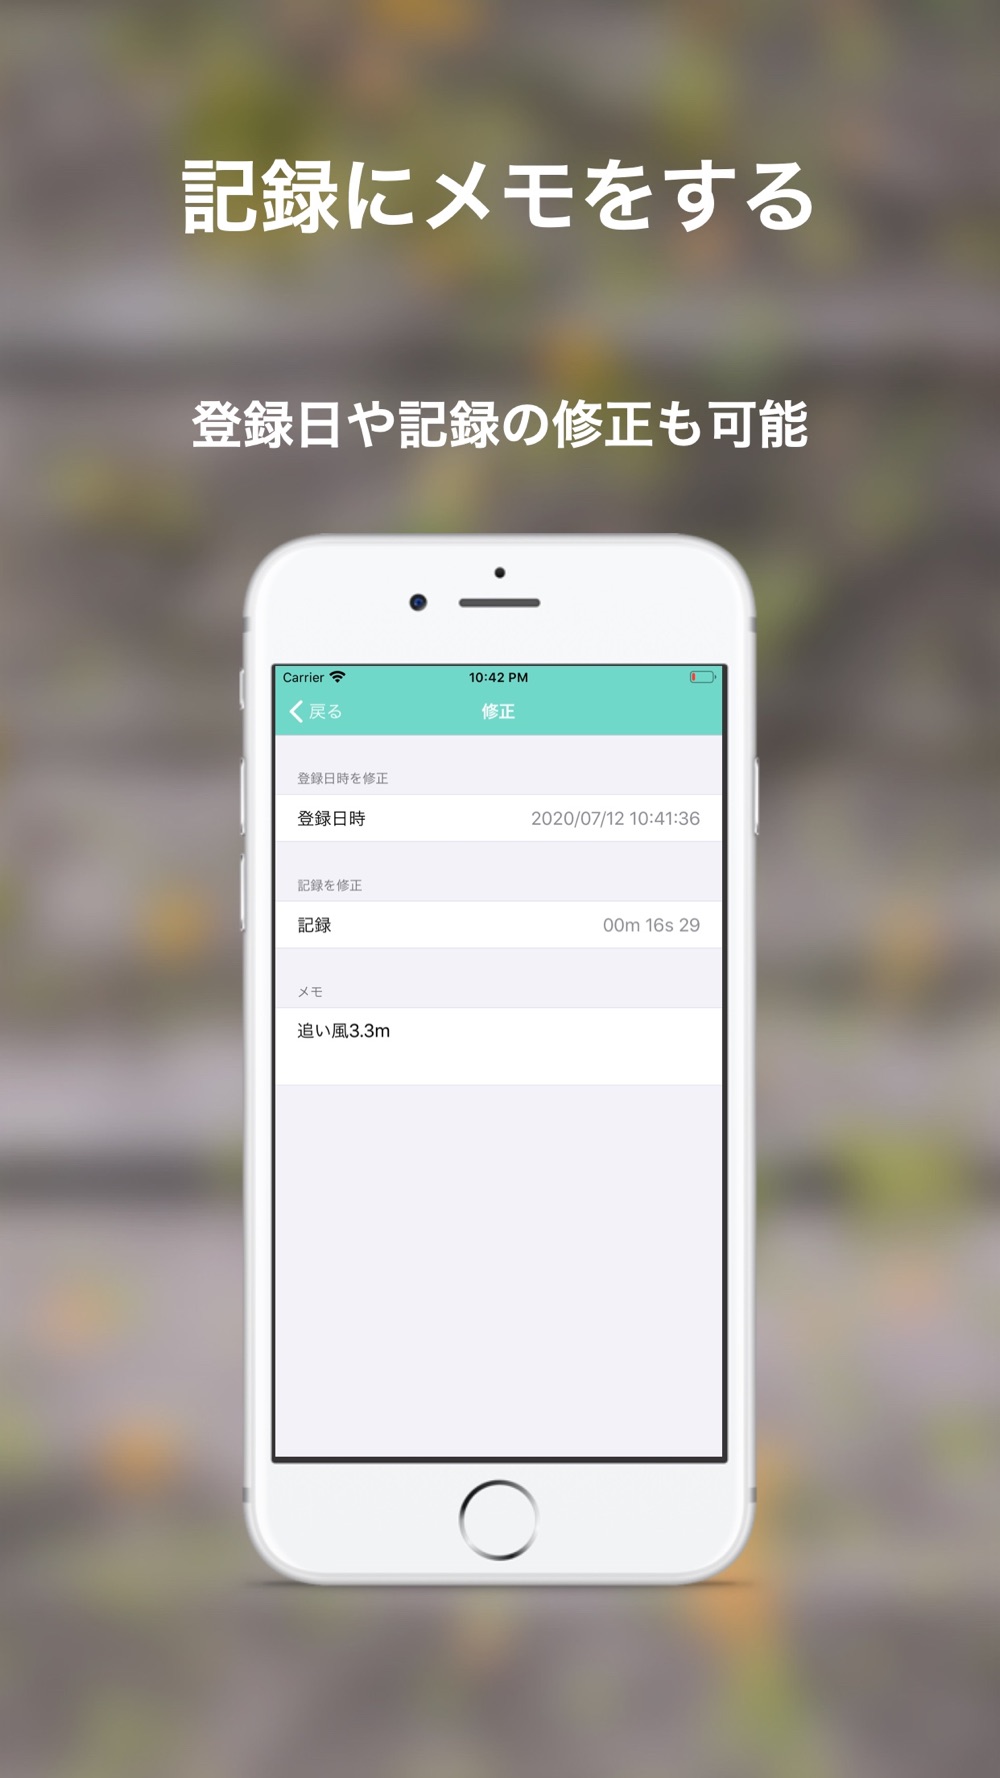 ストップウォッチ 記録 Download App For Iphone Steprimo Com